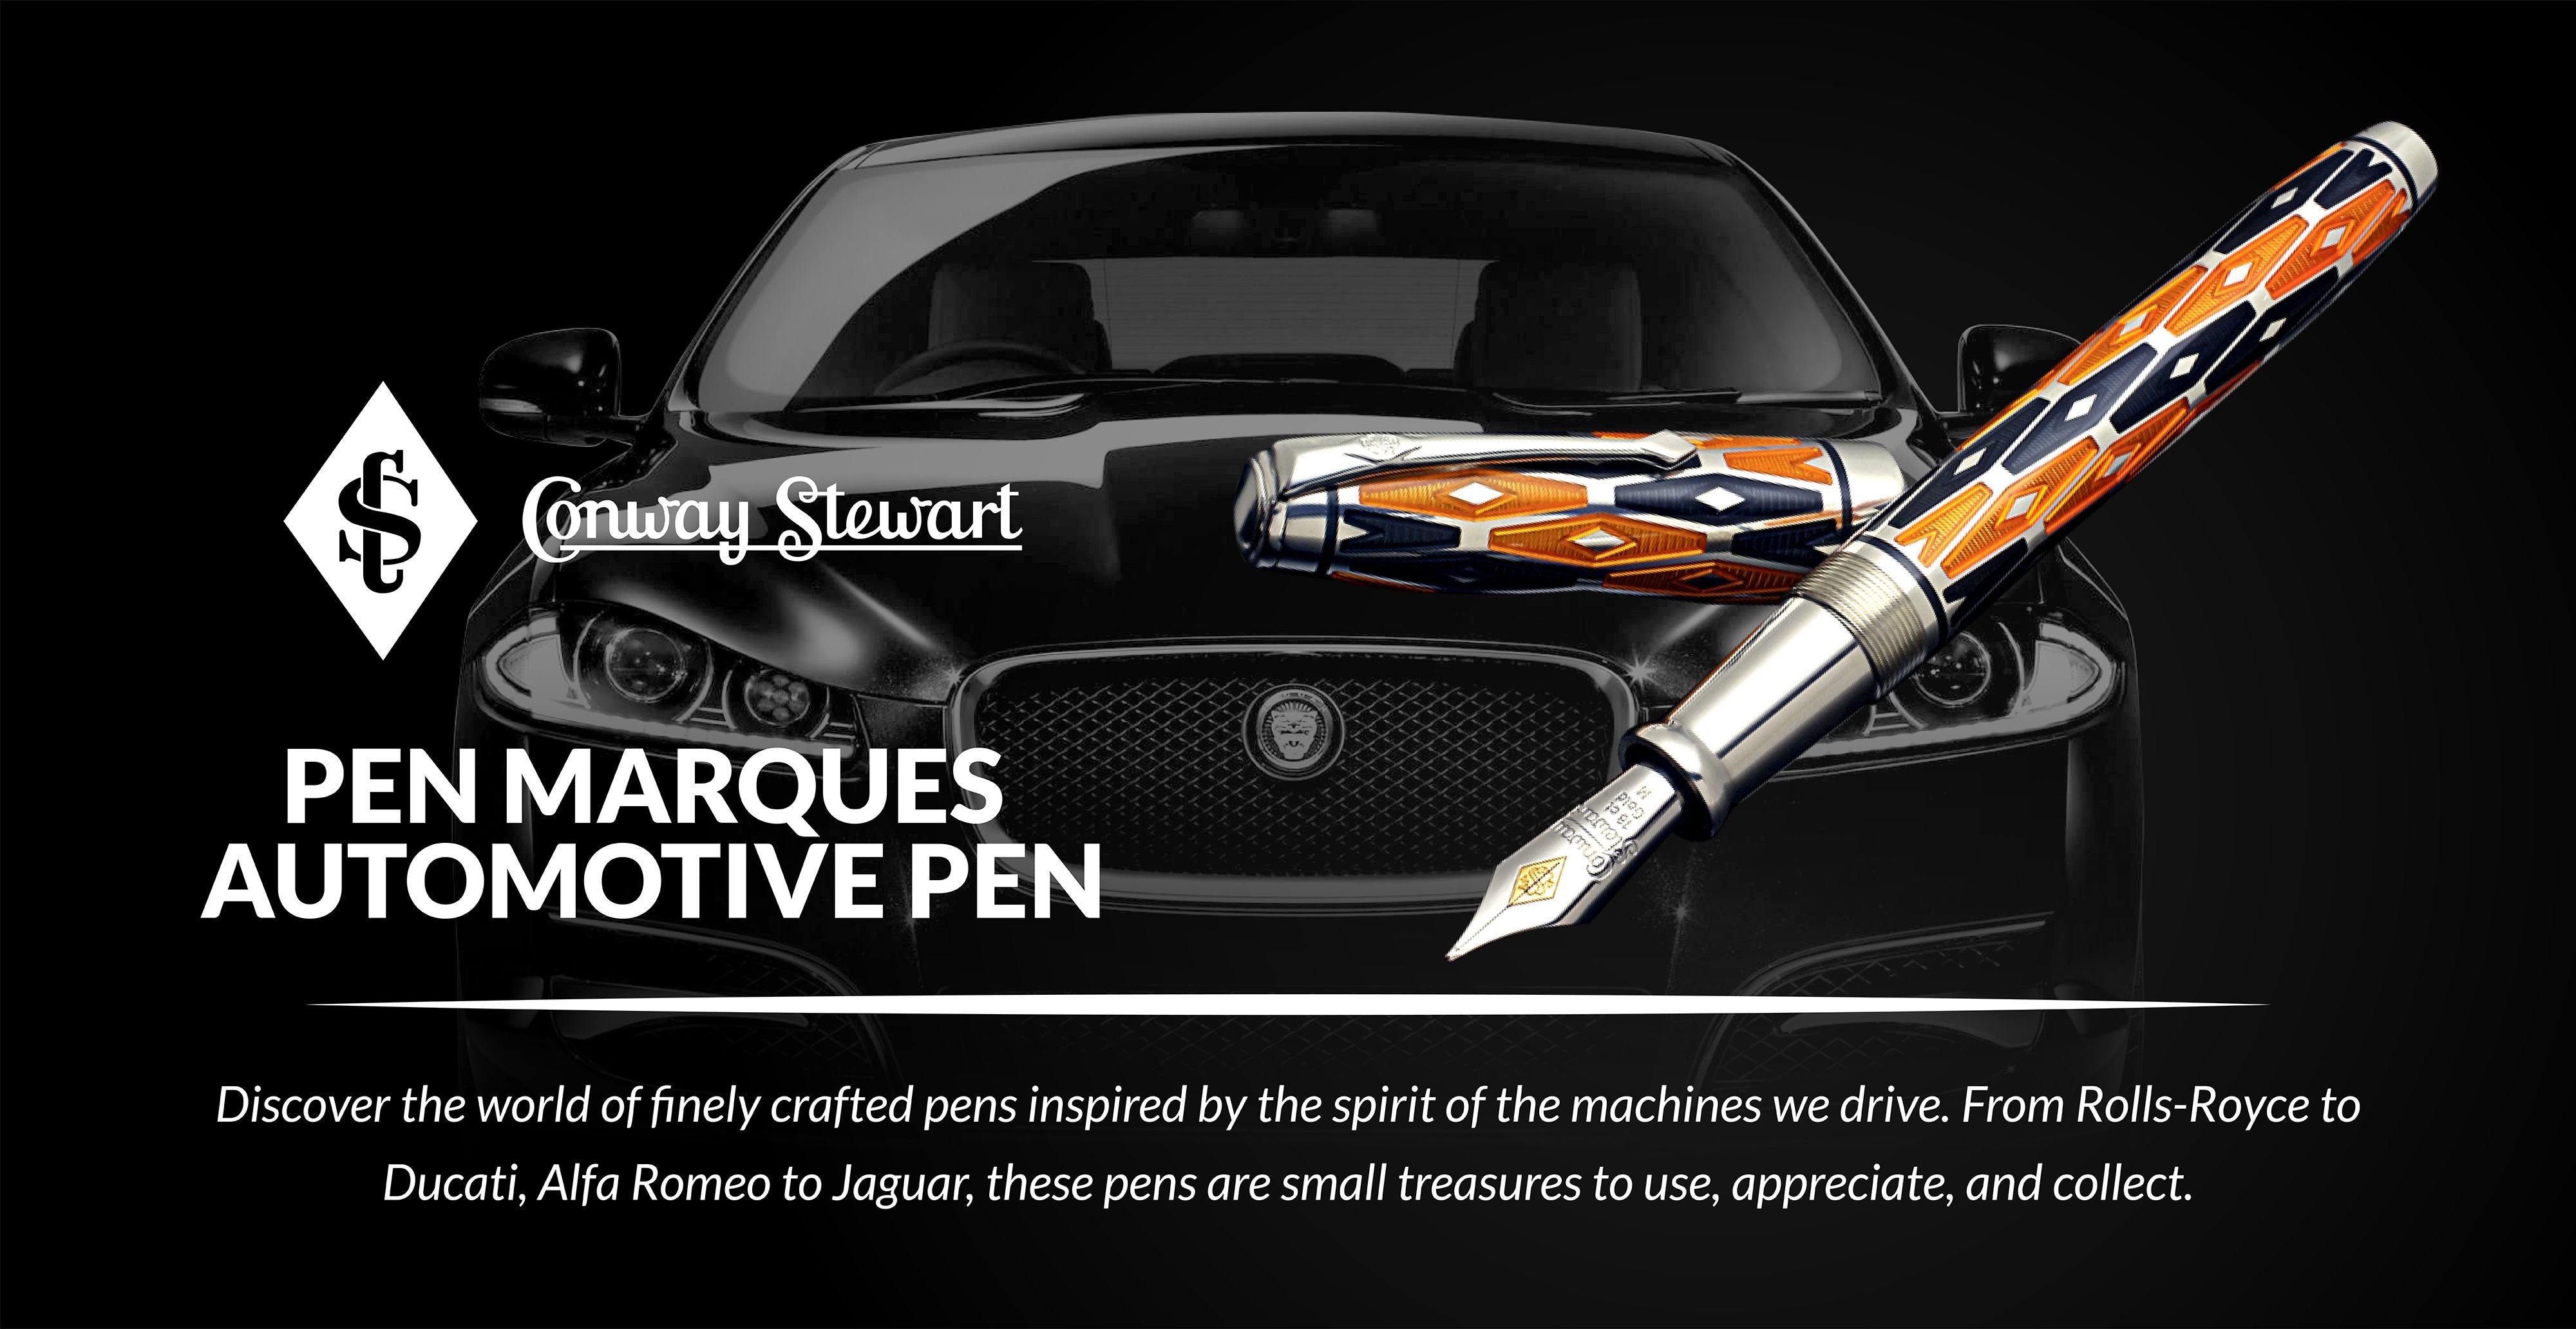 Pen Marques Automotive Pen, 2006